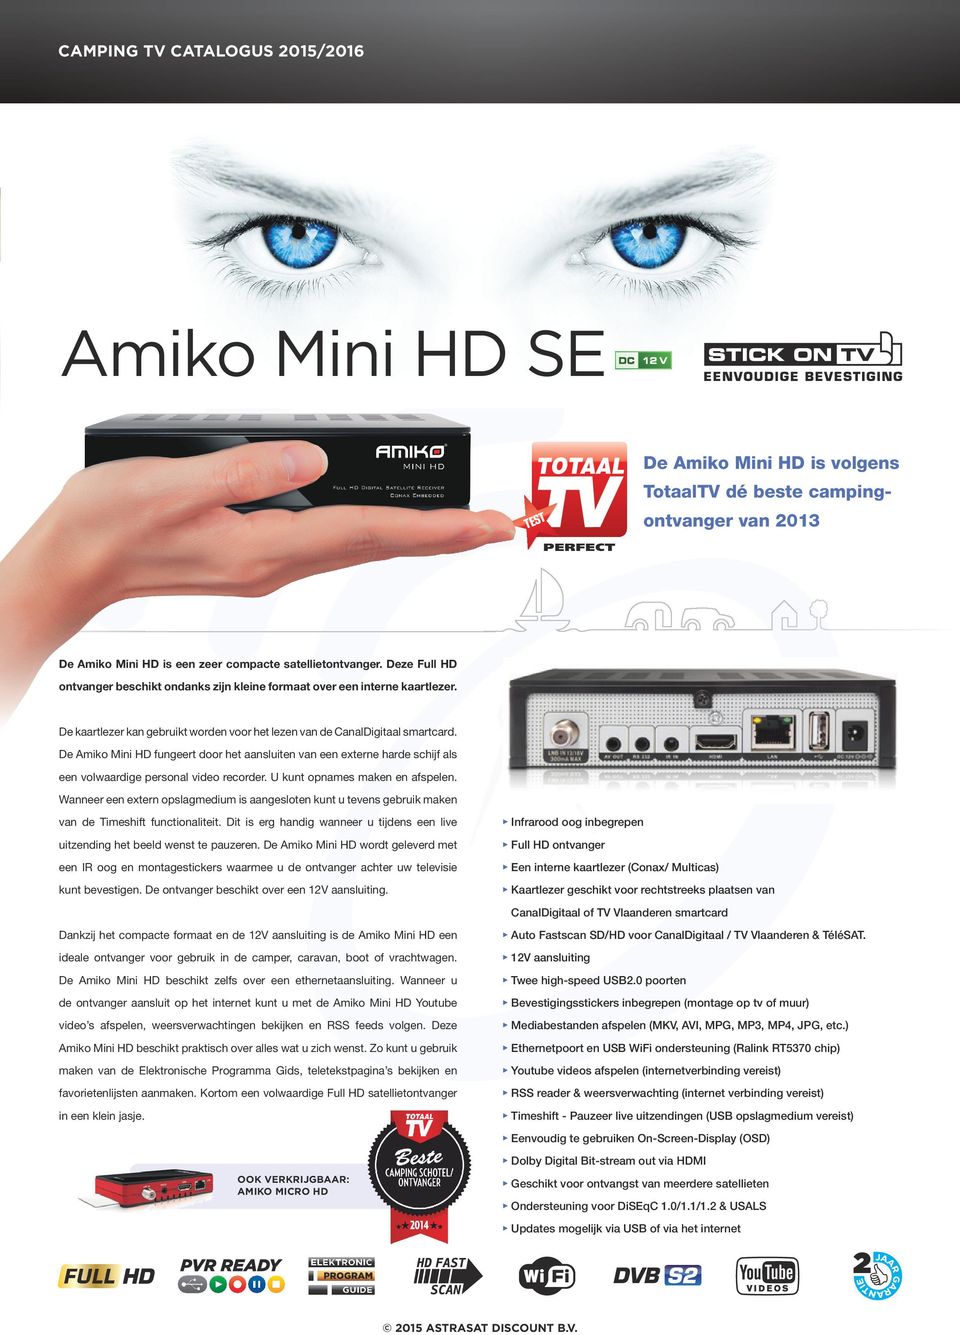 De Amiko Mini HD fungeert door het aansluiten van een externe harde schijf als een volwaardige personal video recorder. U kunt opnames maken en afspelen.